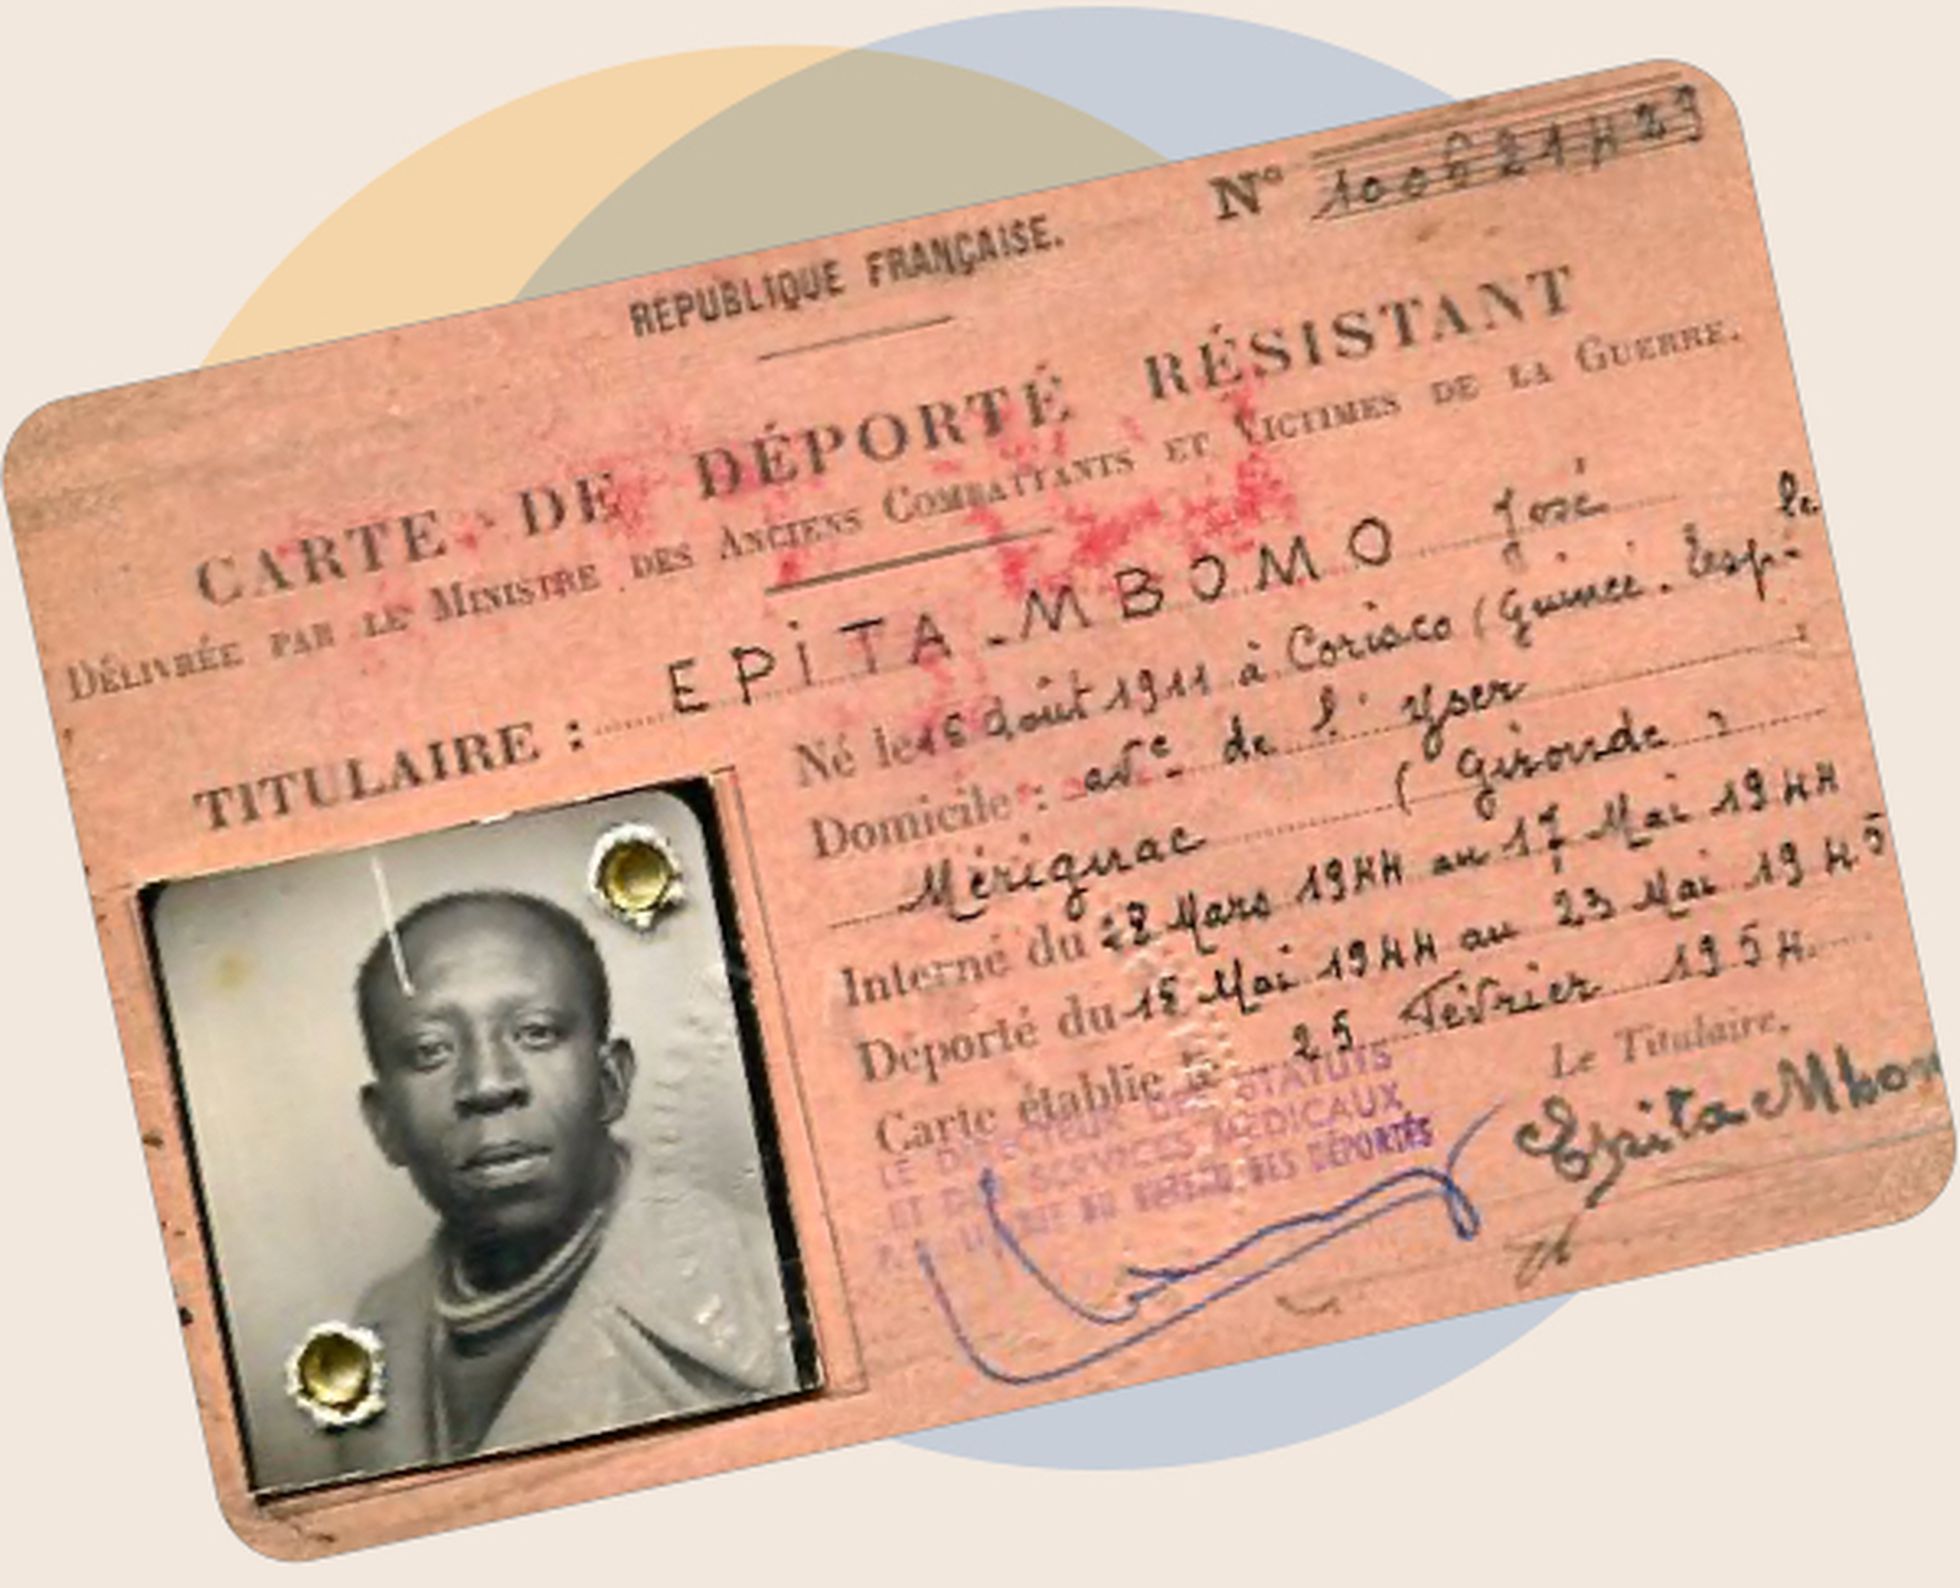 Carné de resistente deportado de José Epita Mbomo emitido por Francia en 1954.